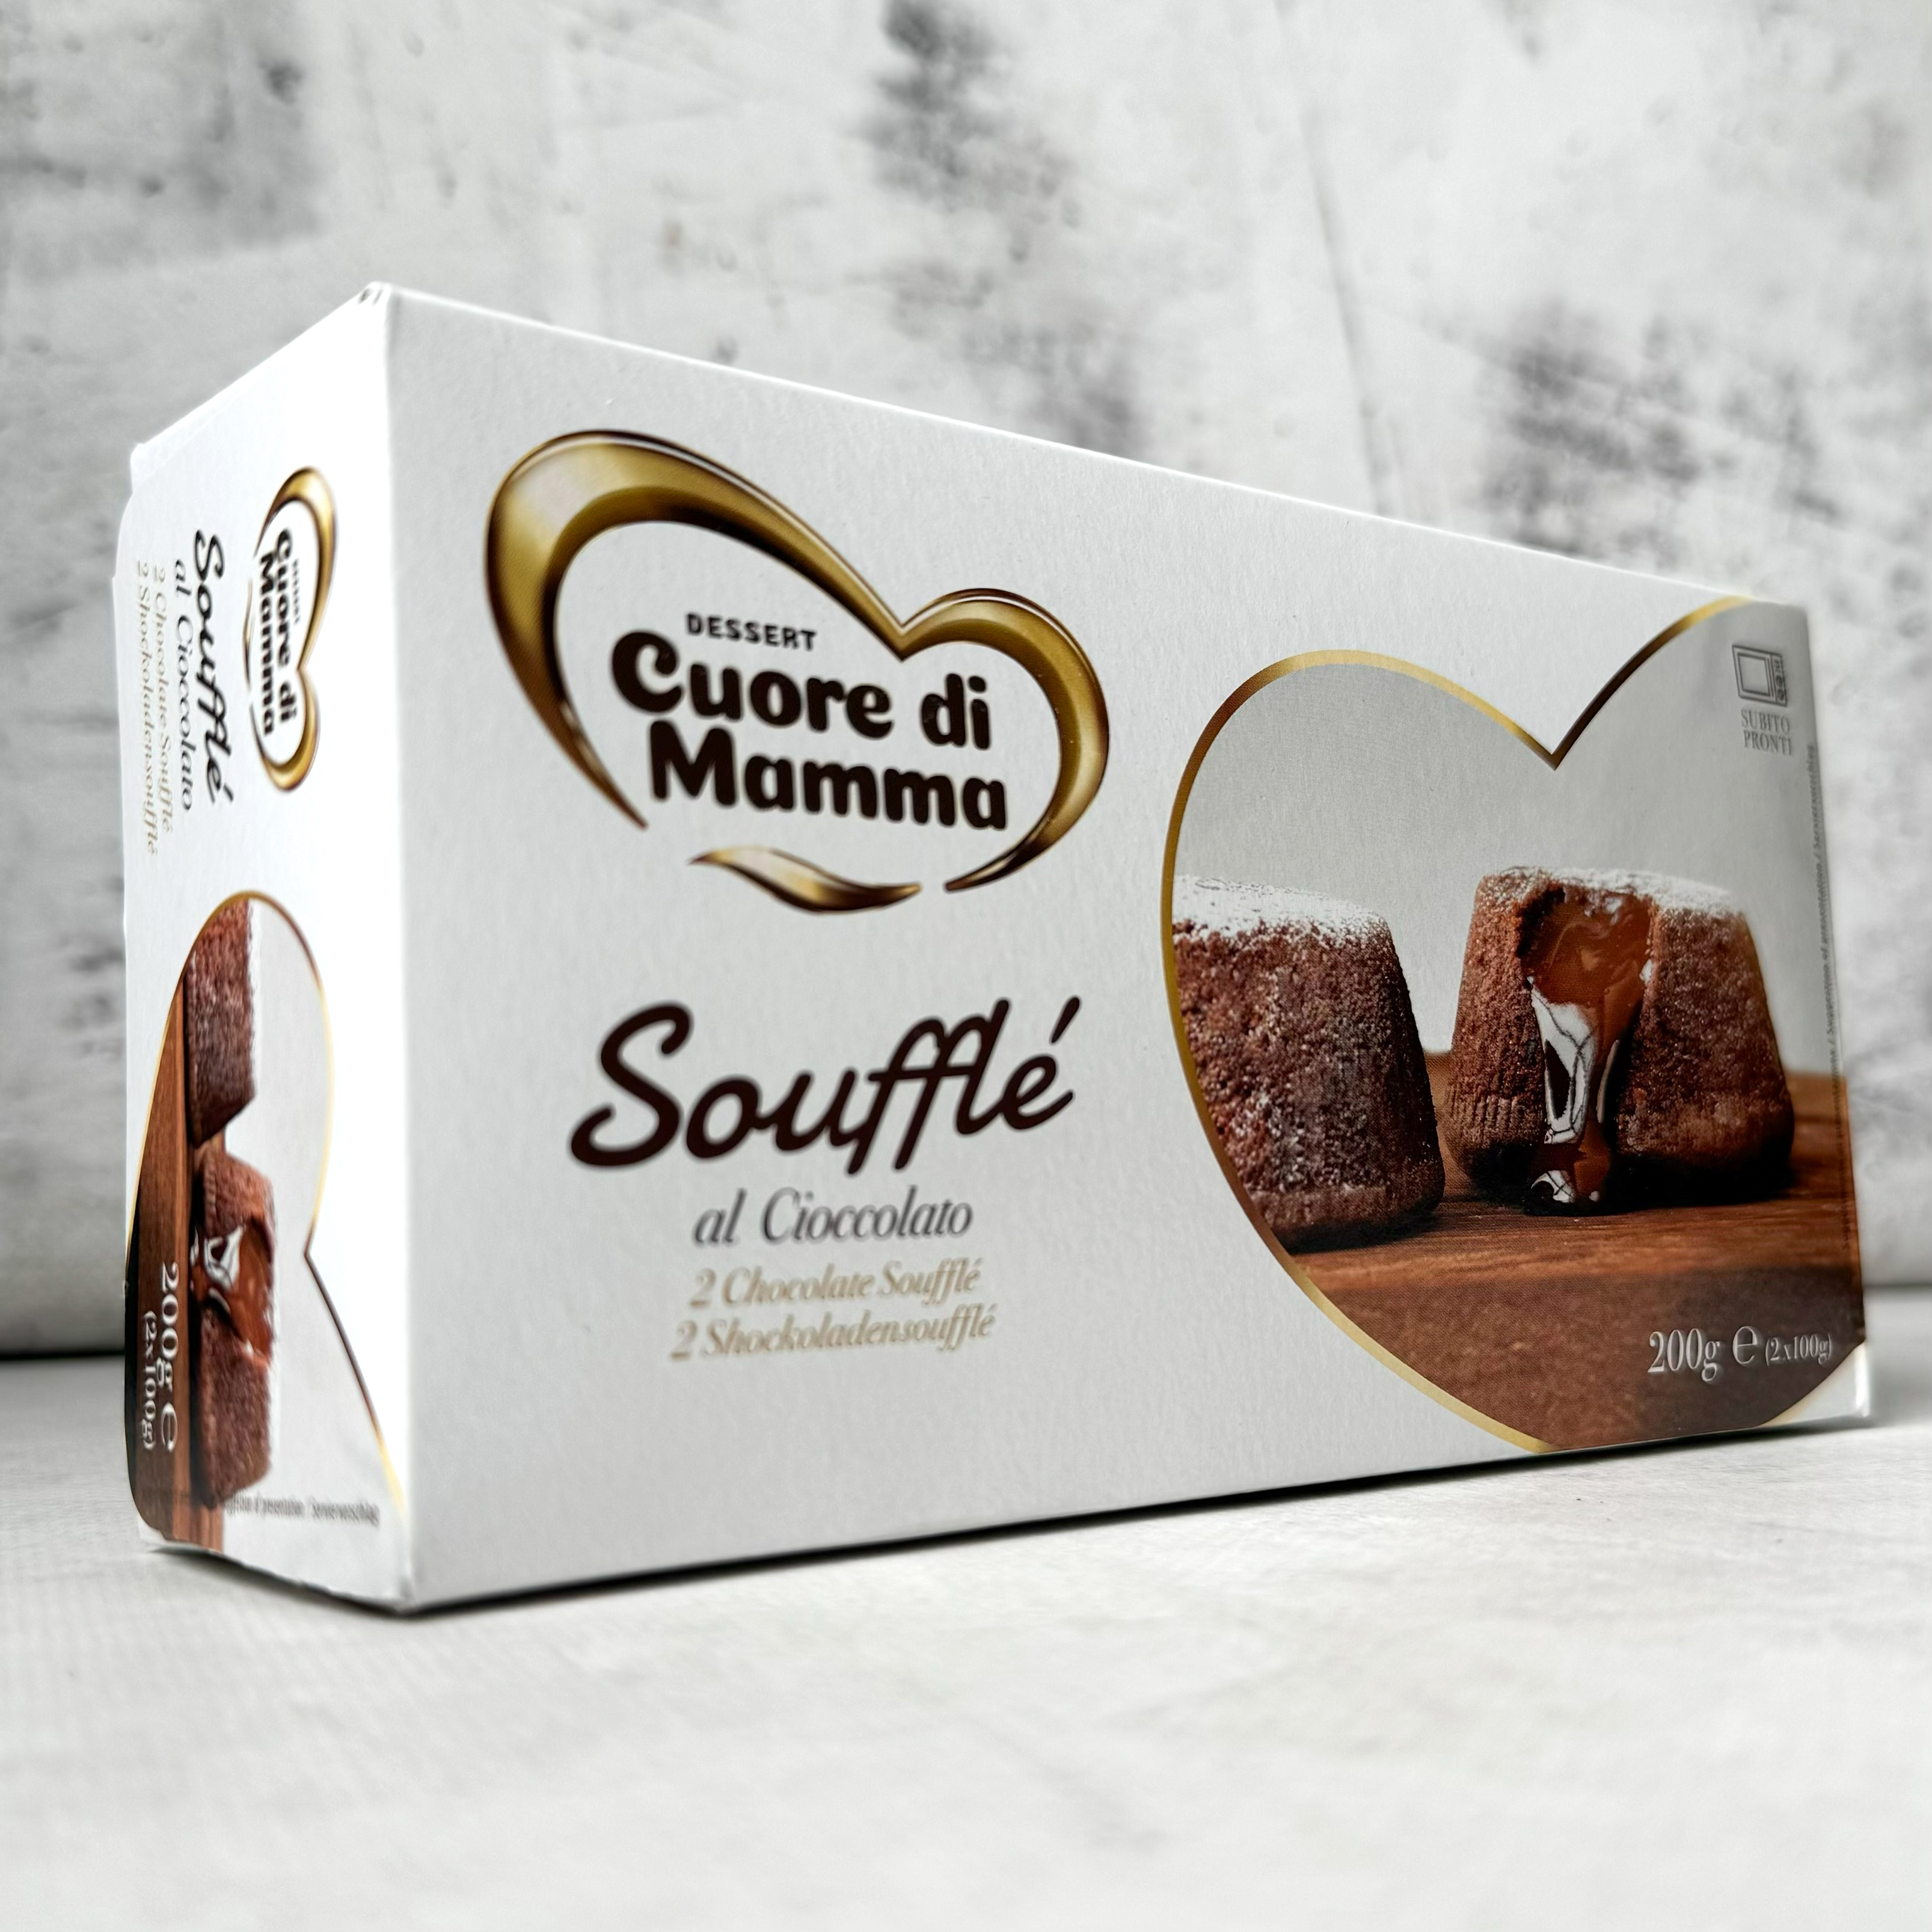 Пирожное из темного шоколада «BarryCallebaut» (Южная Америка) с жидким шоколадом внутри. изображение 5